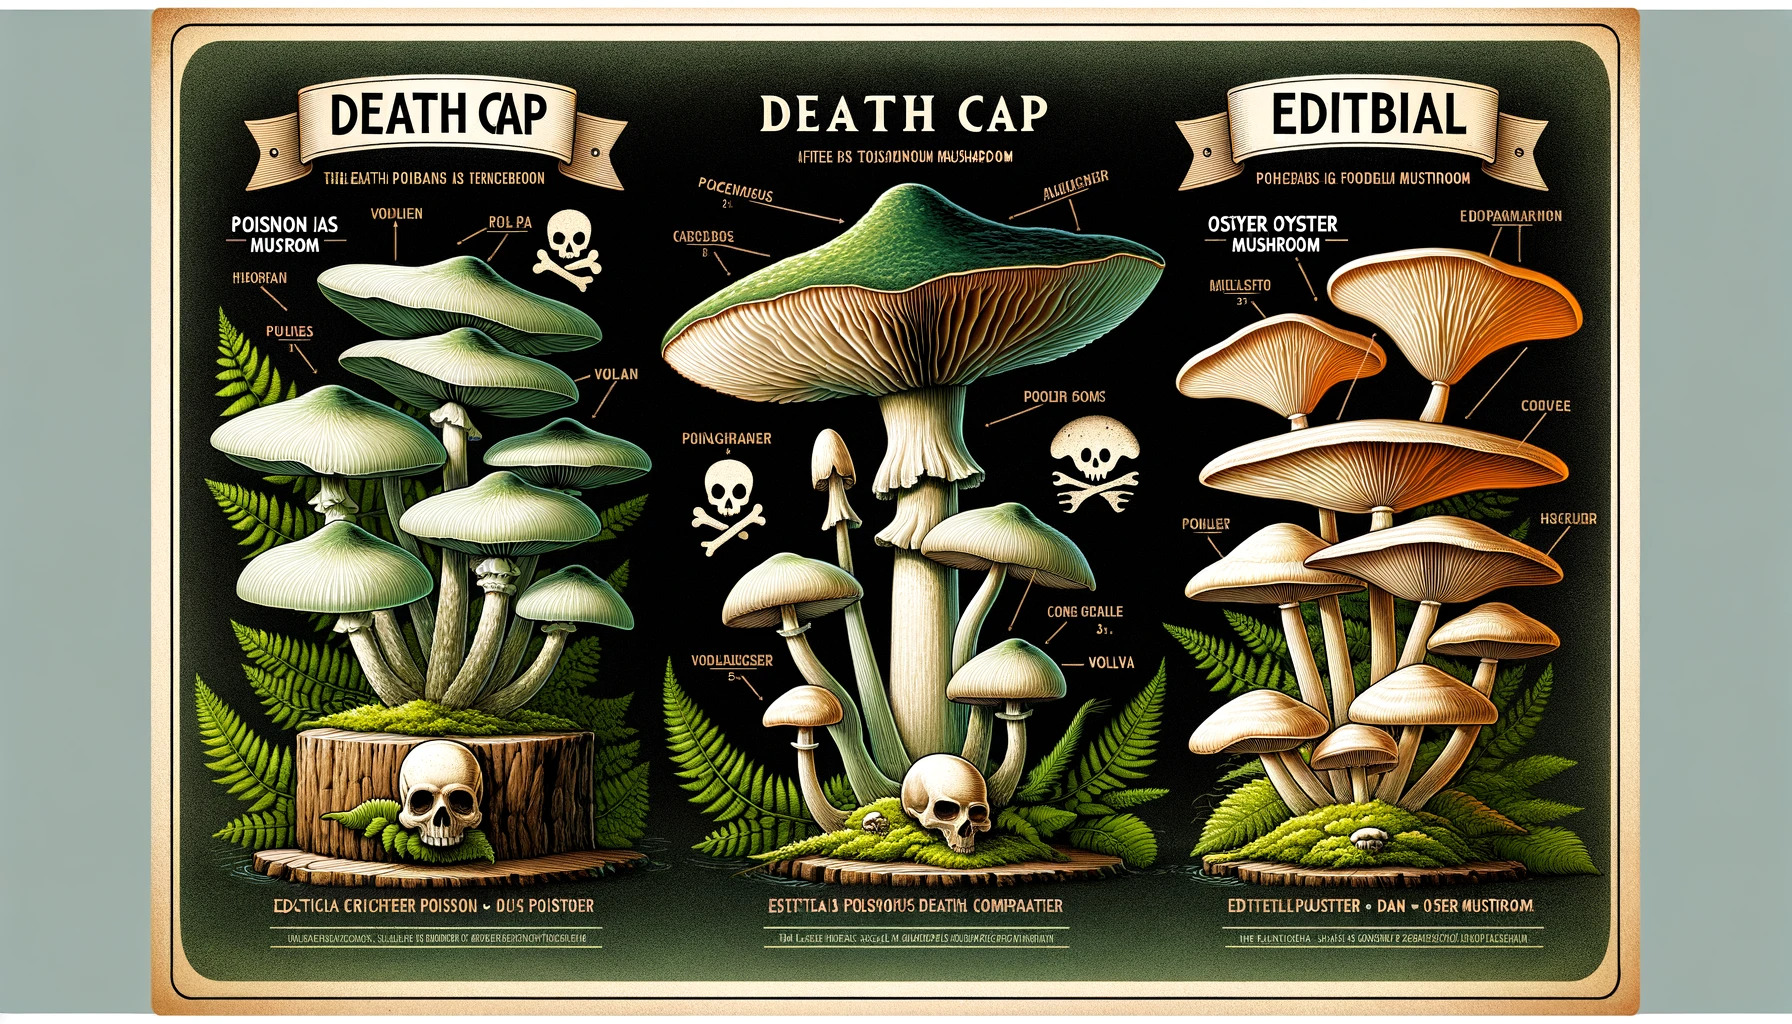 The Poisonous Death Cap